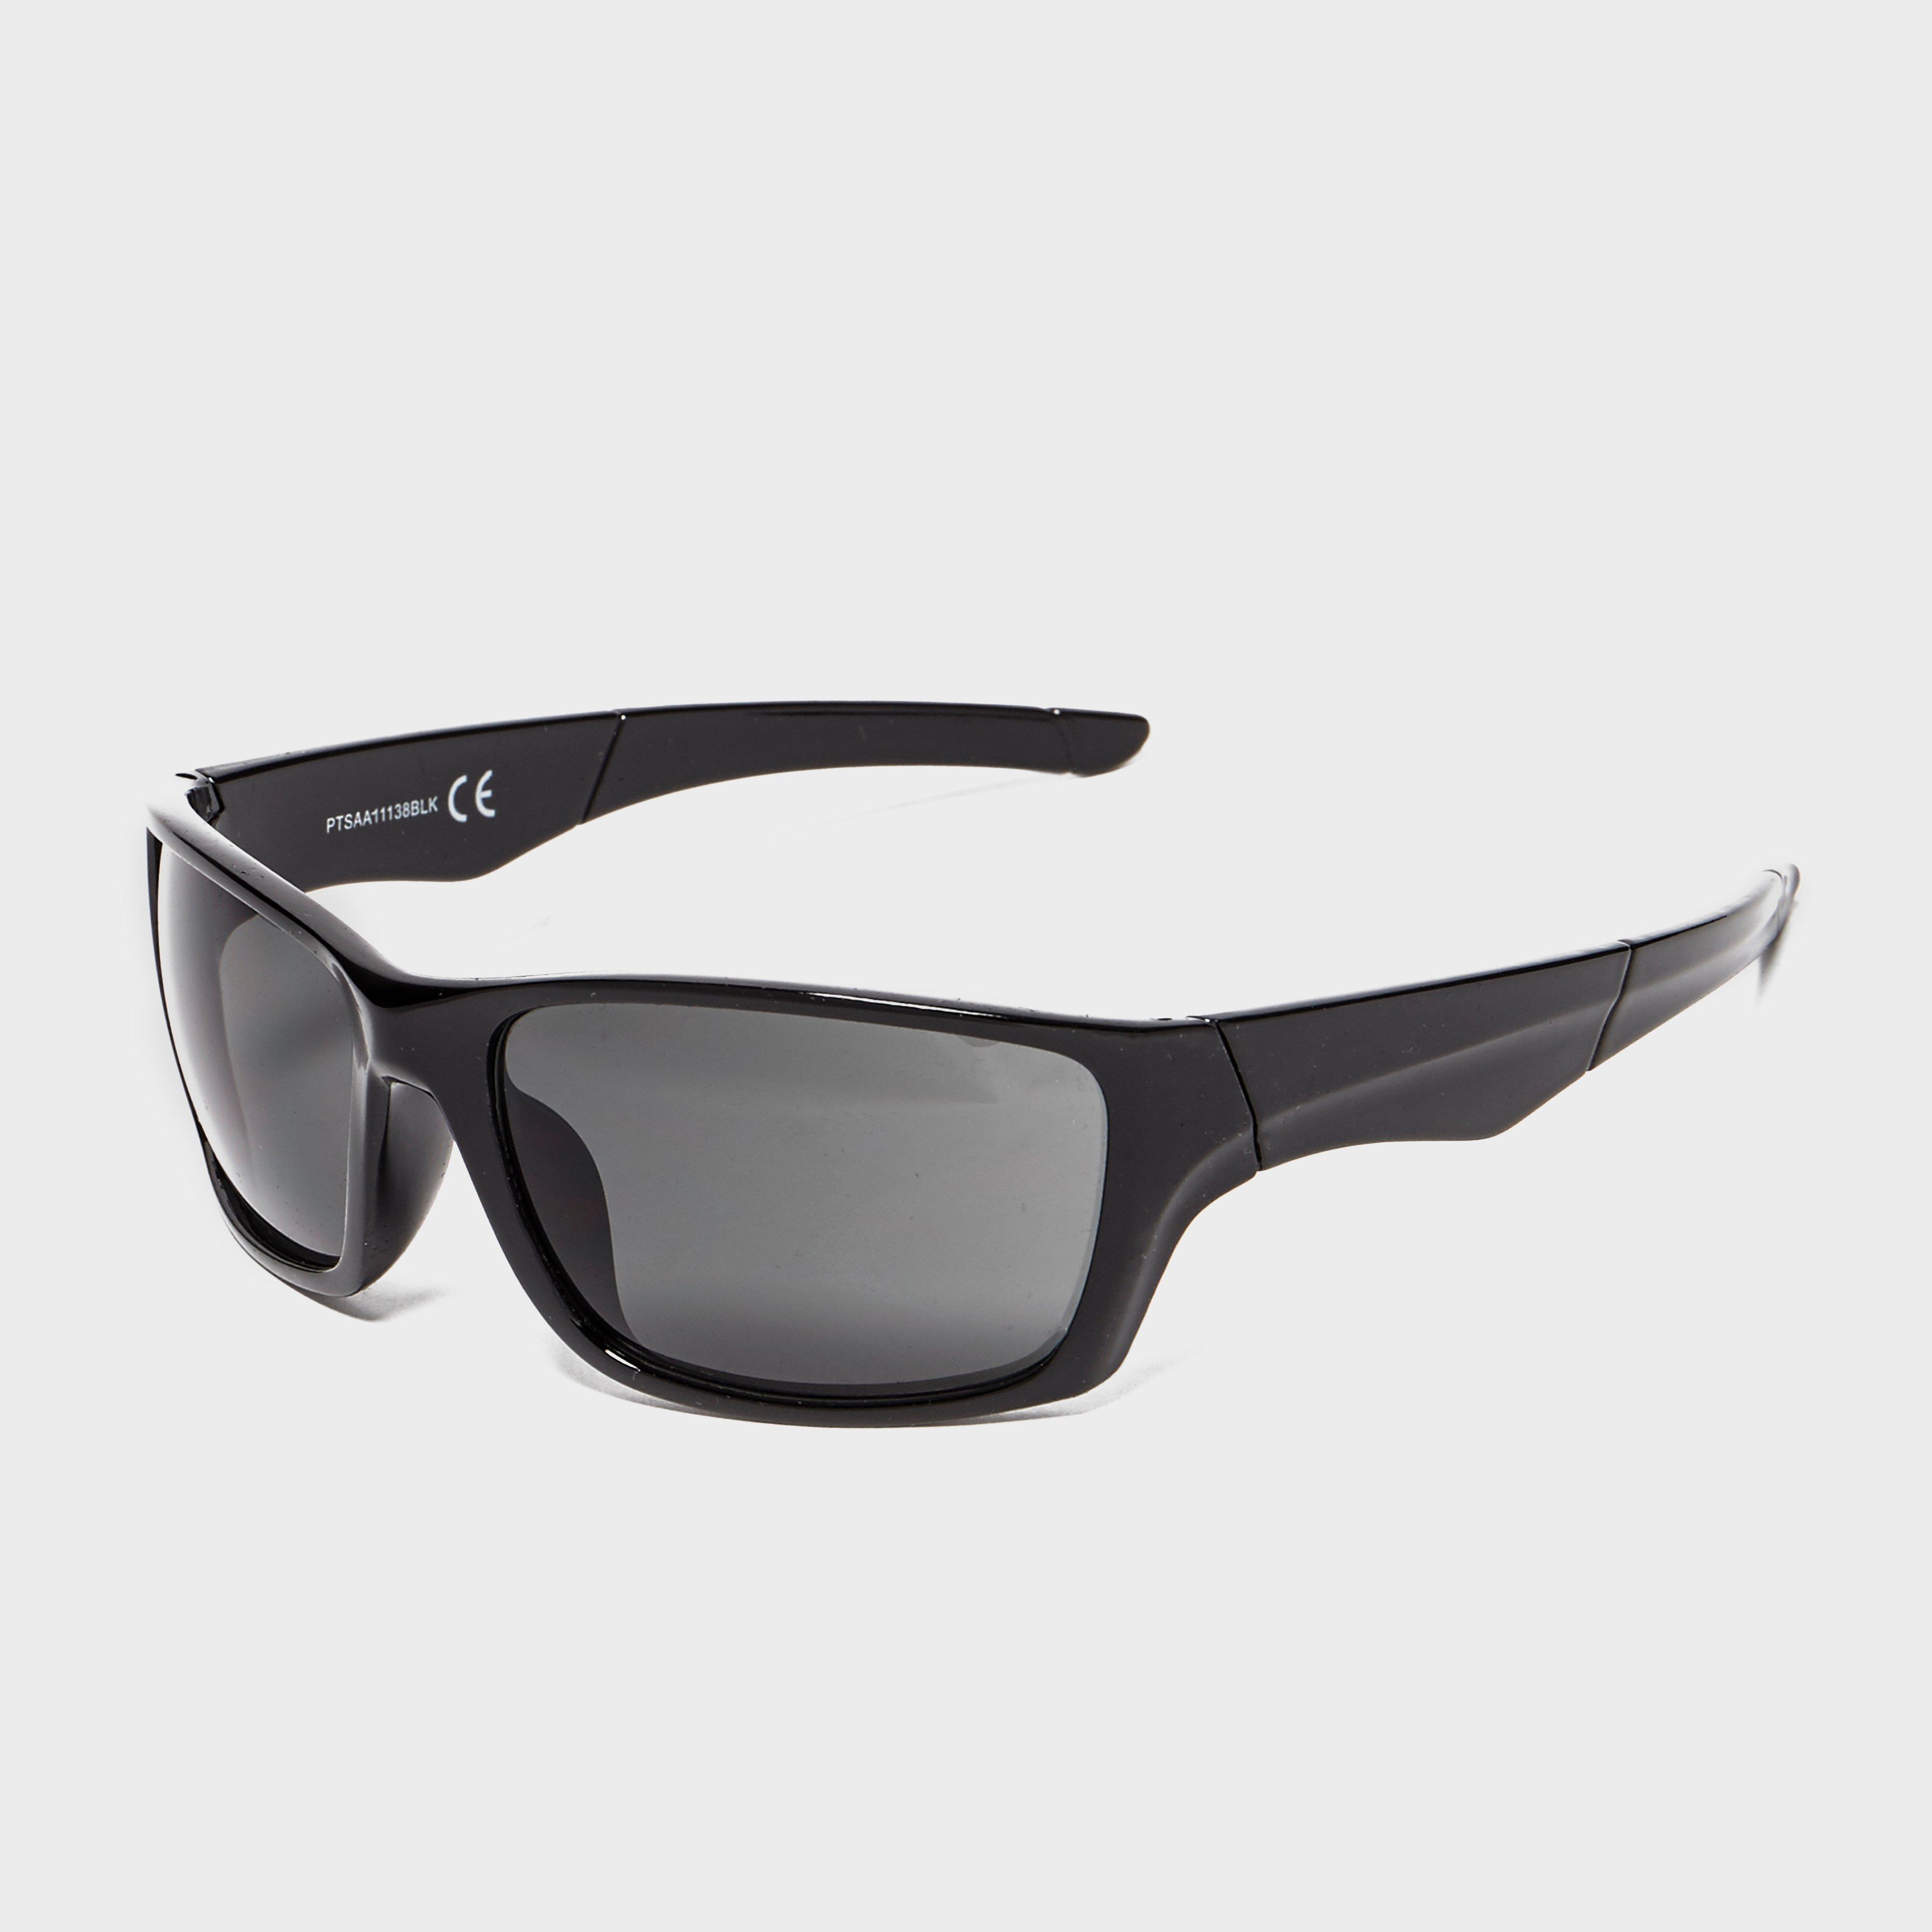 Peter Storm Mens Square Wrap Sunglasses - Black/black  Black/black